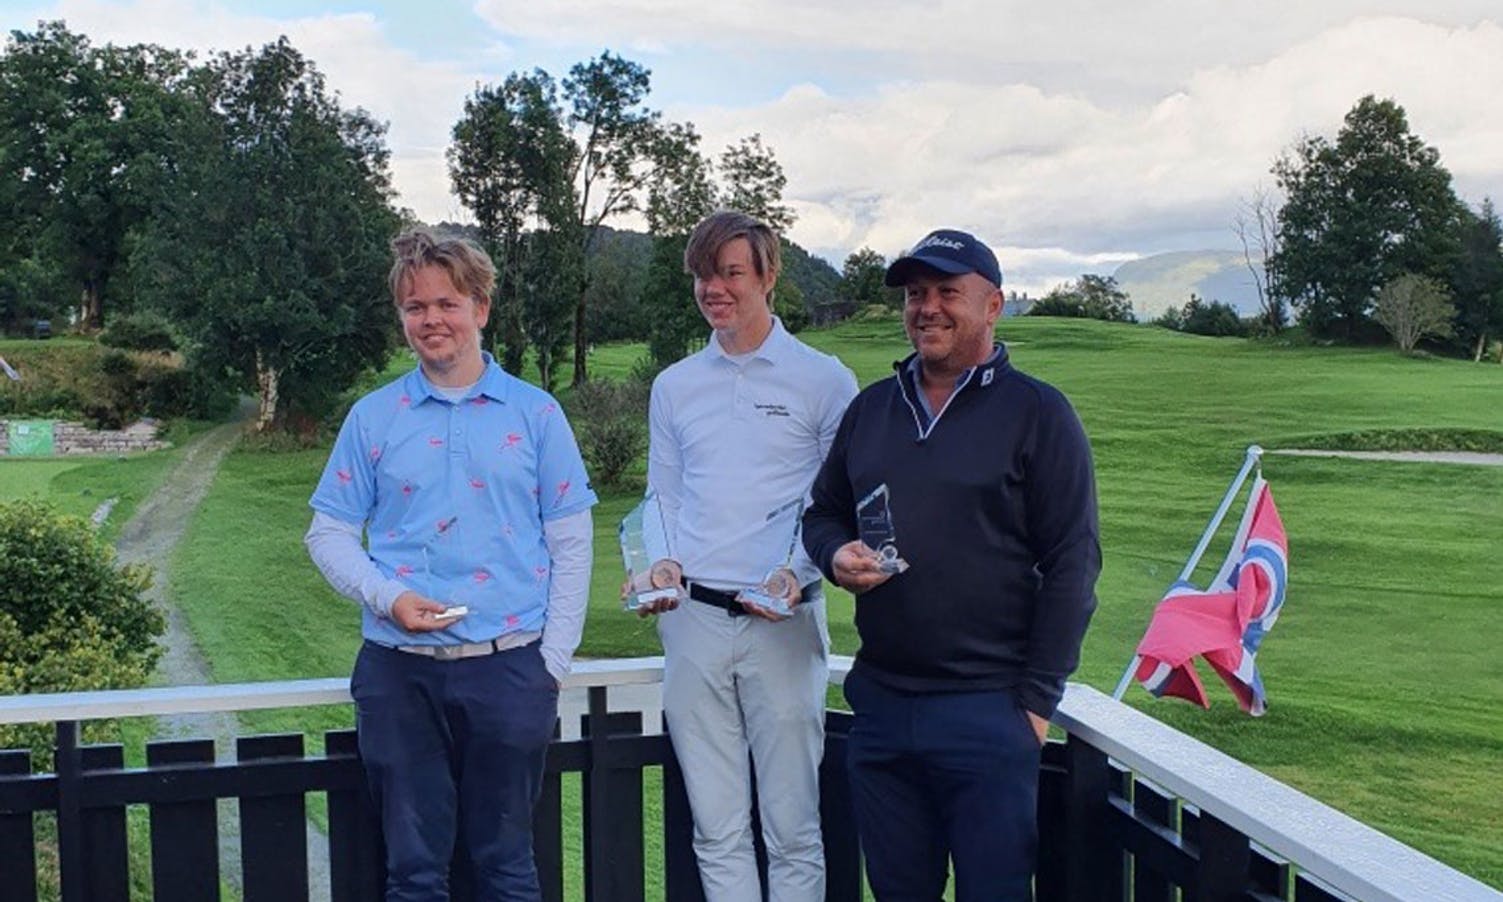 Matthias Pedersen, Nils Gunnar Holemark og Tobias Arntzen trona øverst blandt herrene i årets klubbmeisterskap i golf. Foto: Bjarte Wiberg.